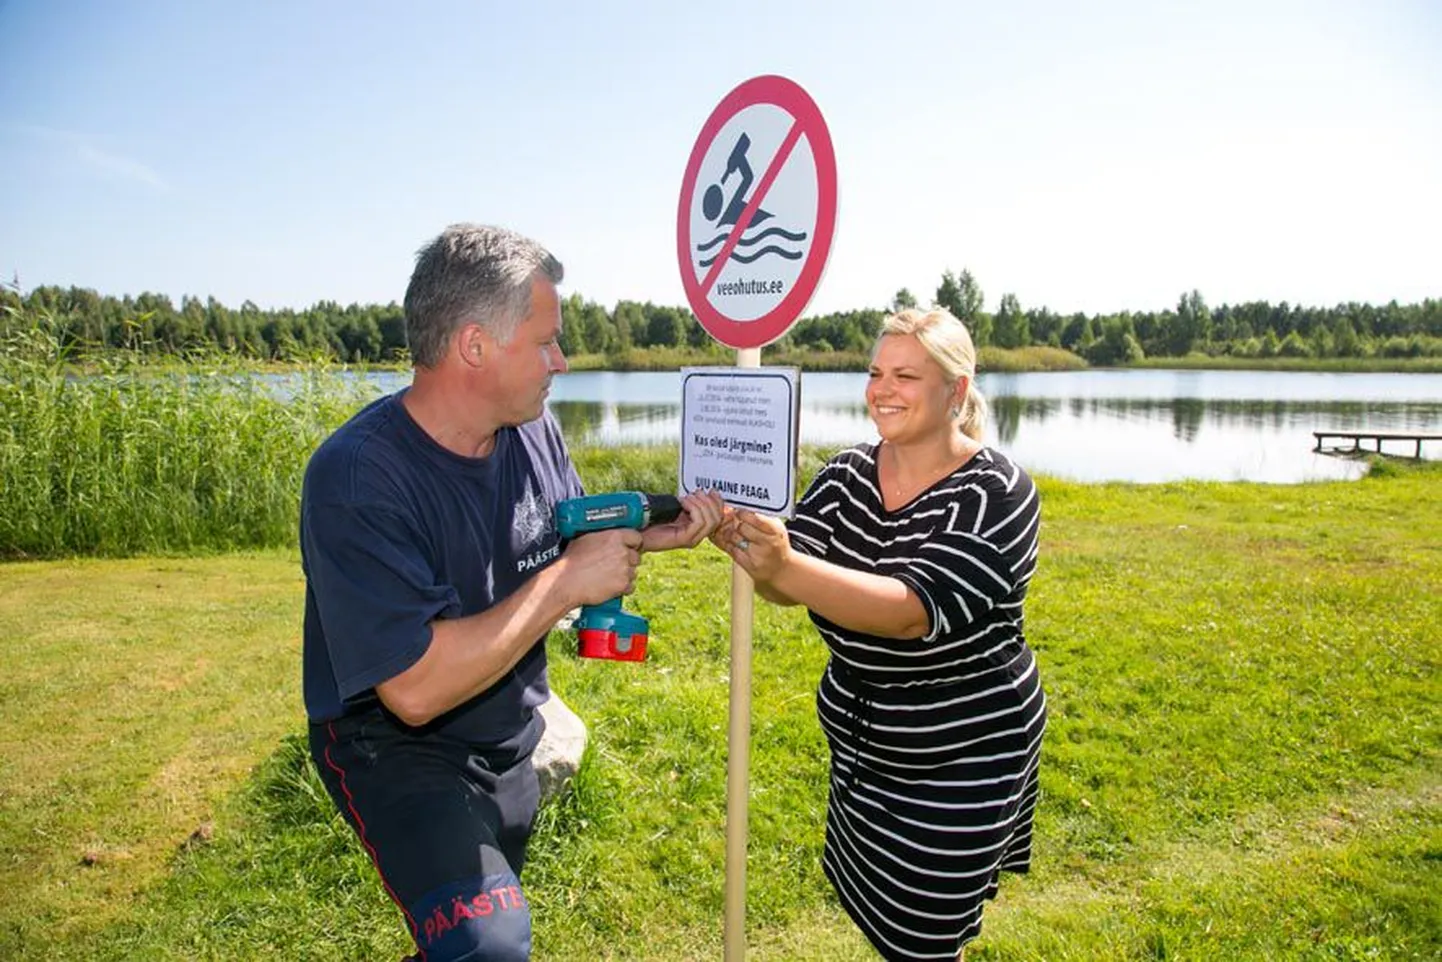 Päästeameti ennetustöö spetsialist Kätlin Poopuu ja Türi päästja Arvi Pitelkov kruvivad keelumärgi külge teadetetahvli, mis annab teada, et selles järves on tänavu uppunud juba kaks inimest.